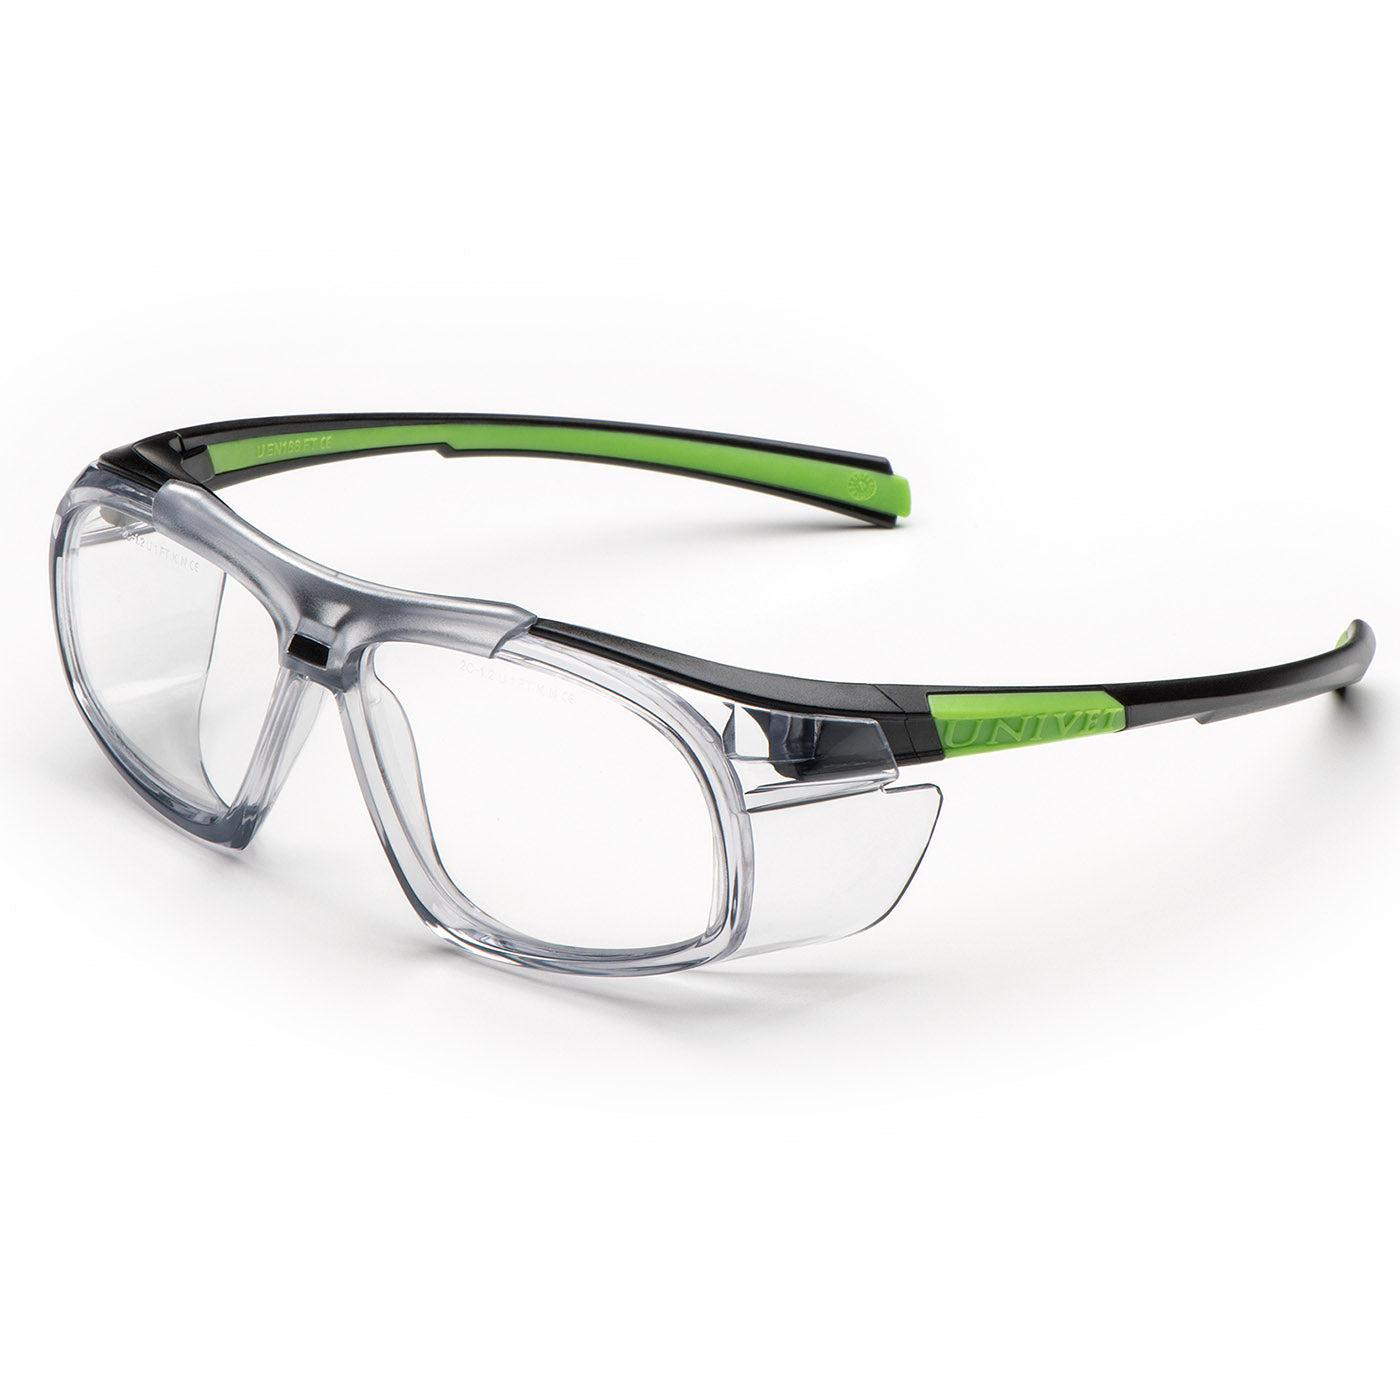 Univet 555 Clear Lens Safety Glasses - 555.03.00.00